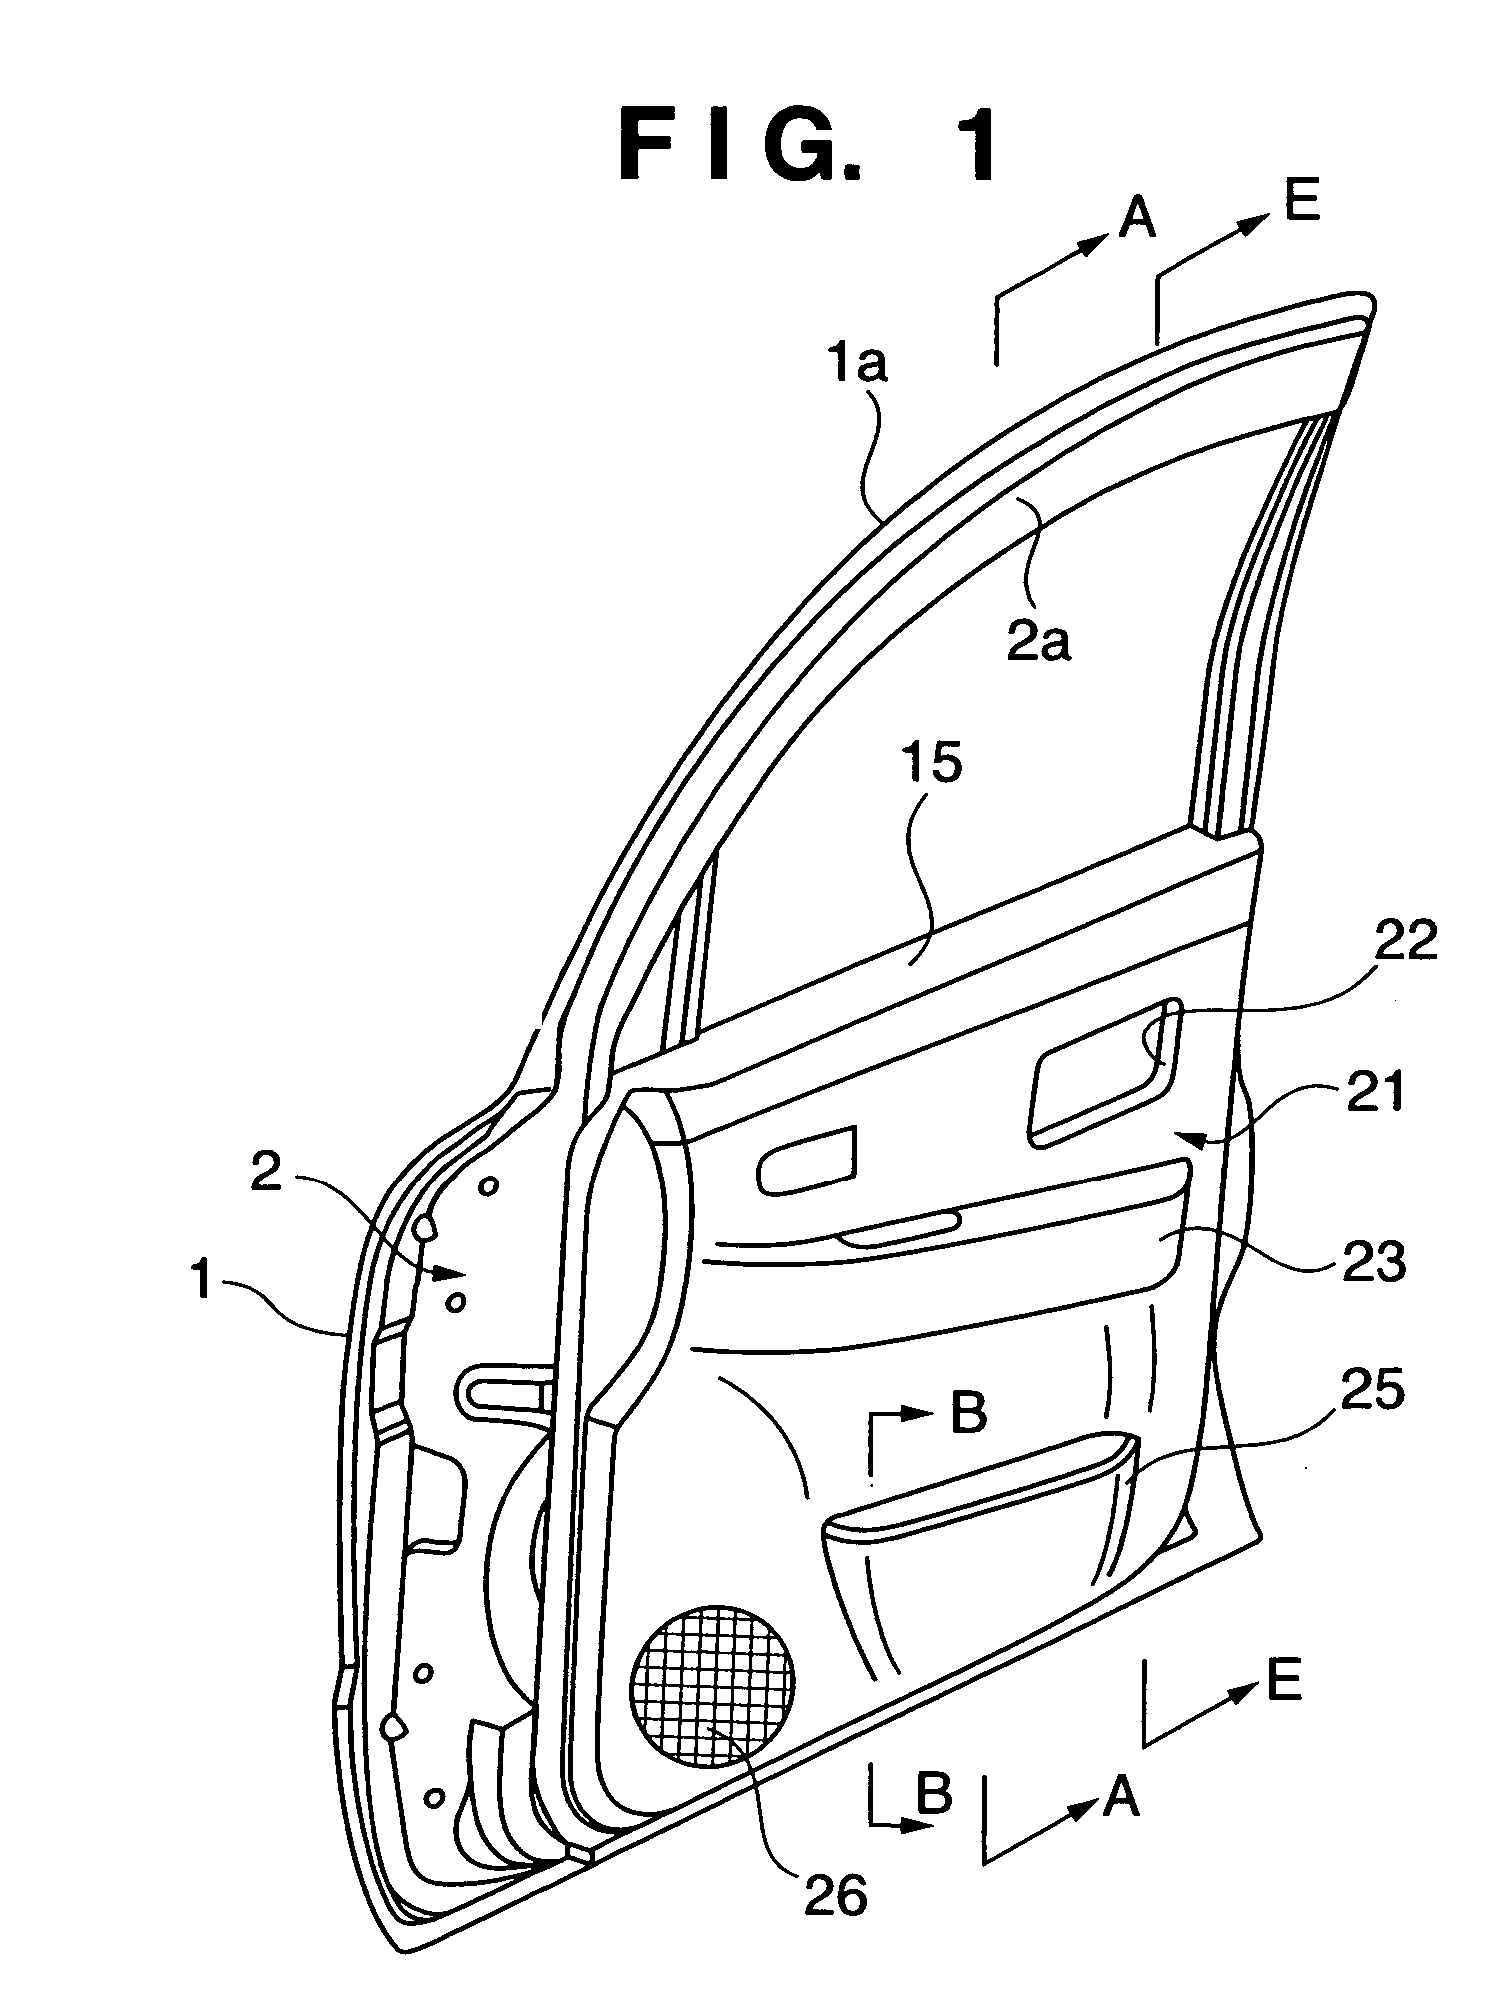 Automobile door structure